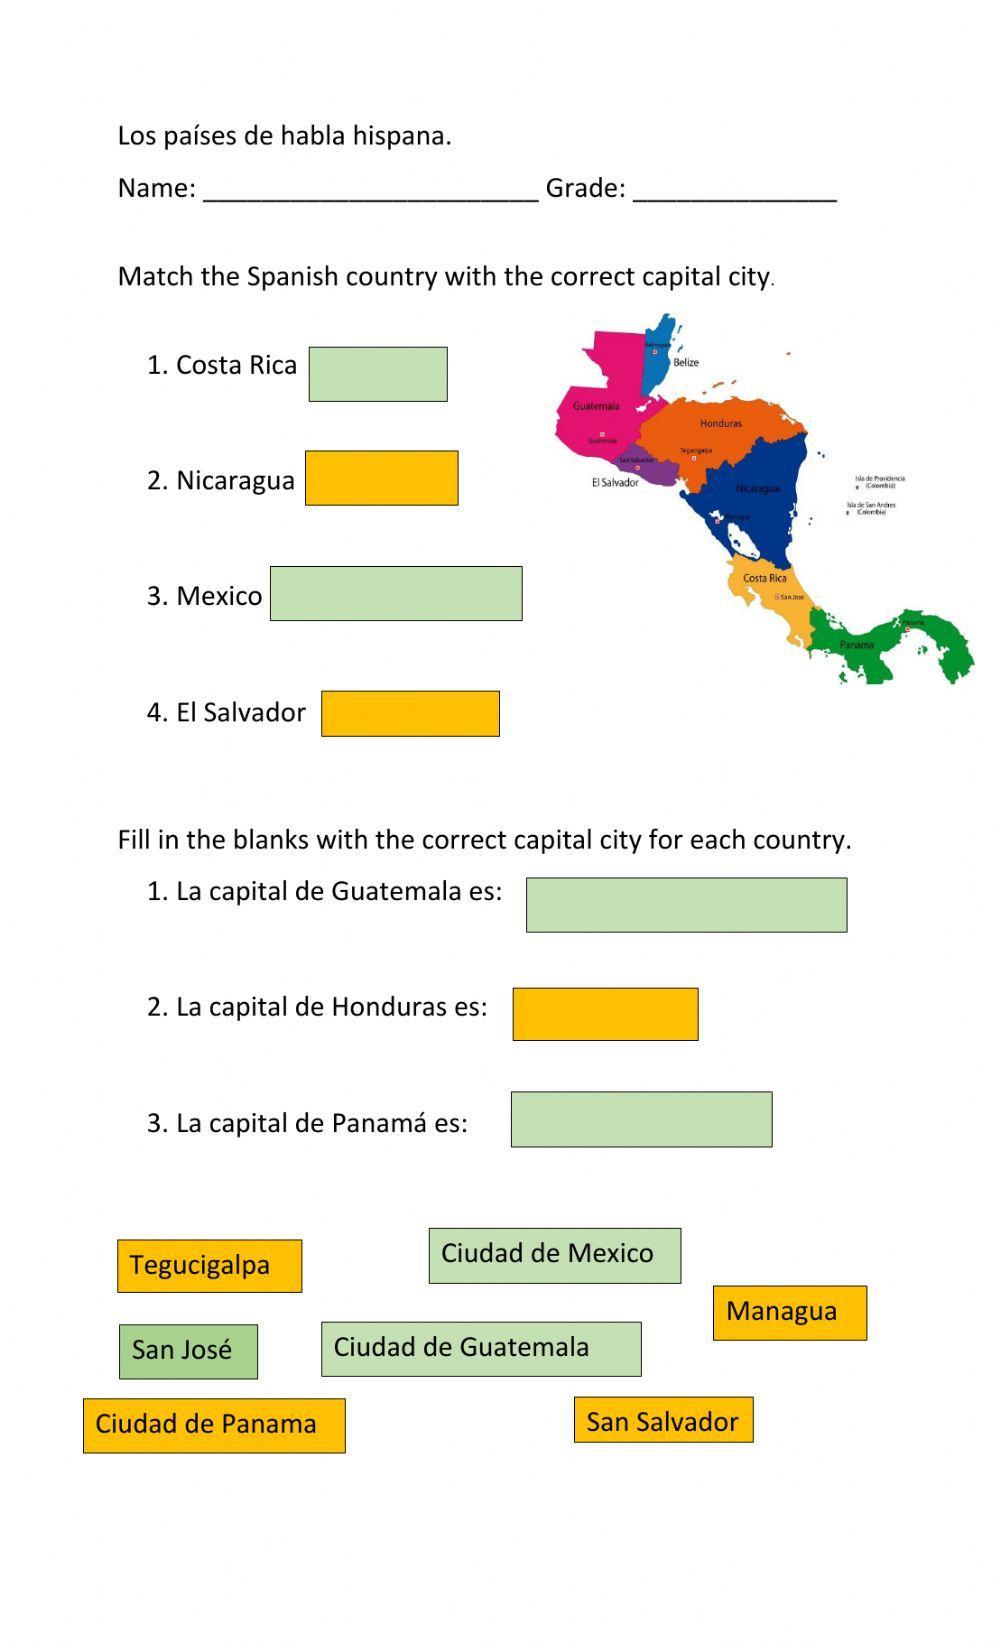 Los paises de habla hispana